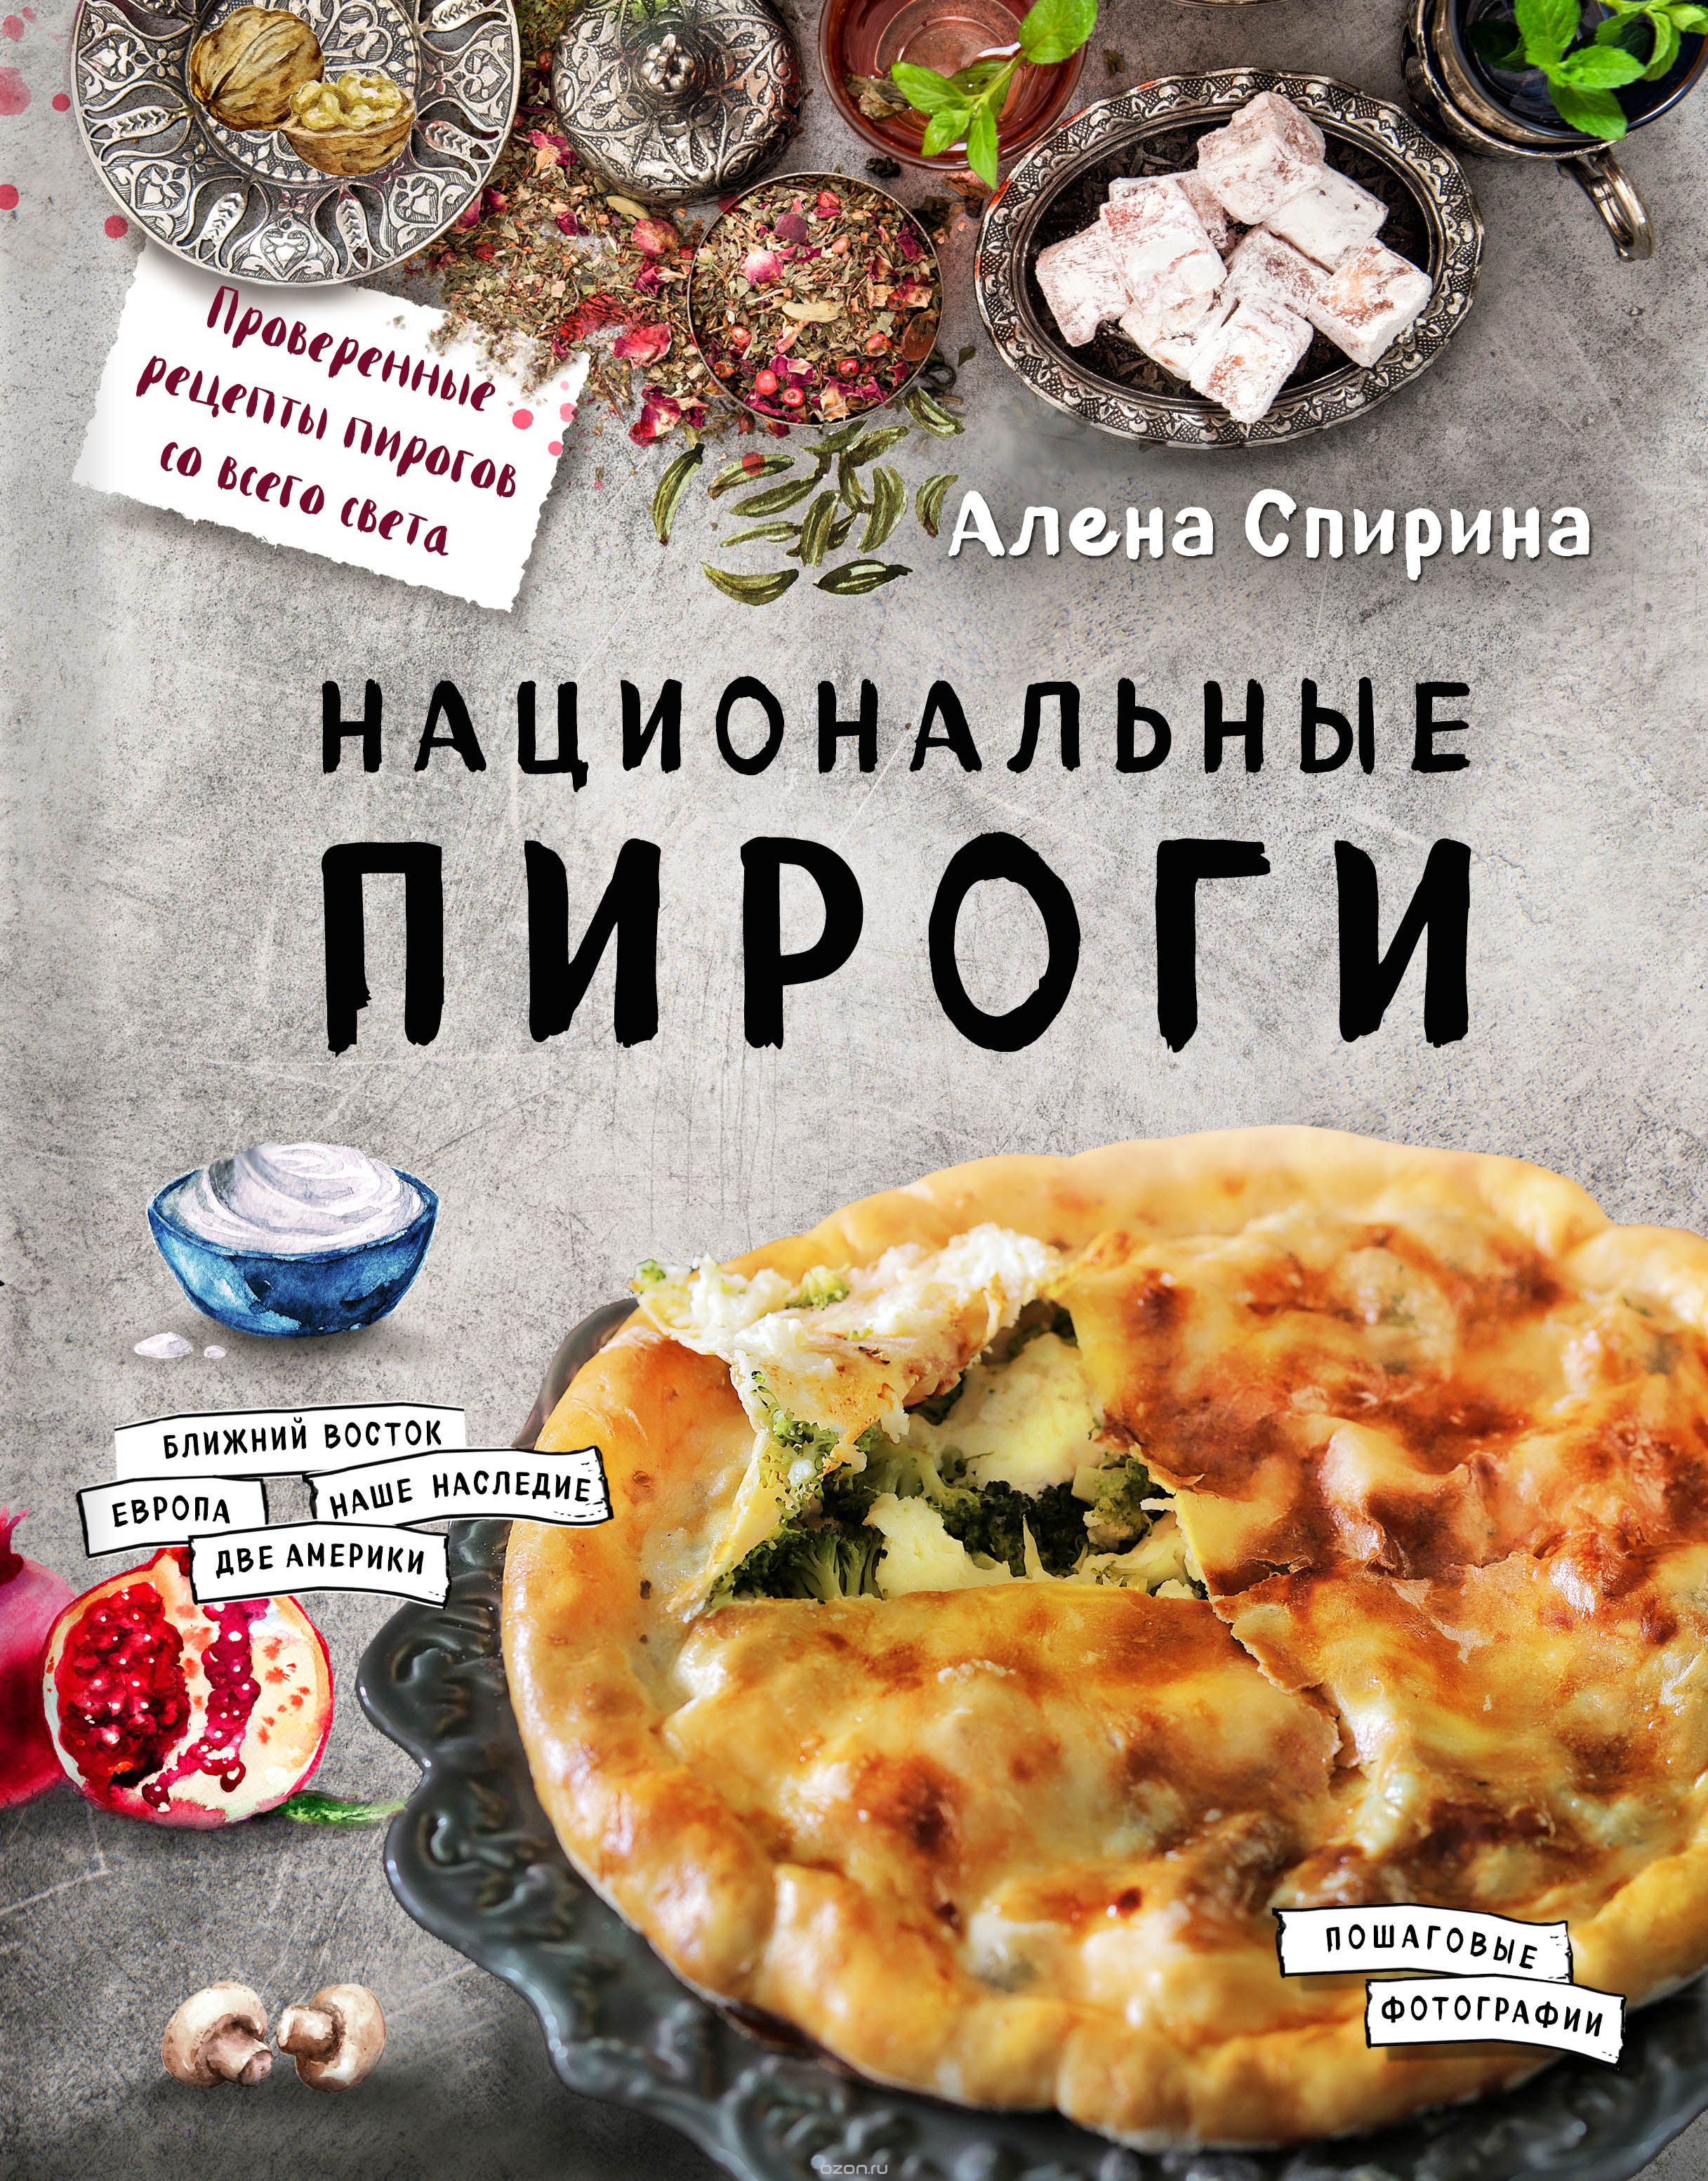 Скачать книгу "Национальные пироги, Спирина Алена Вениаминовна"